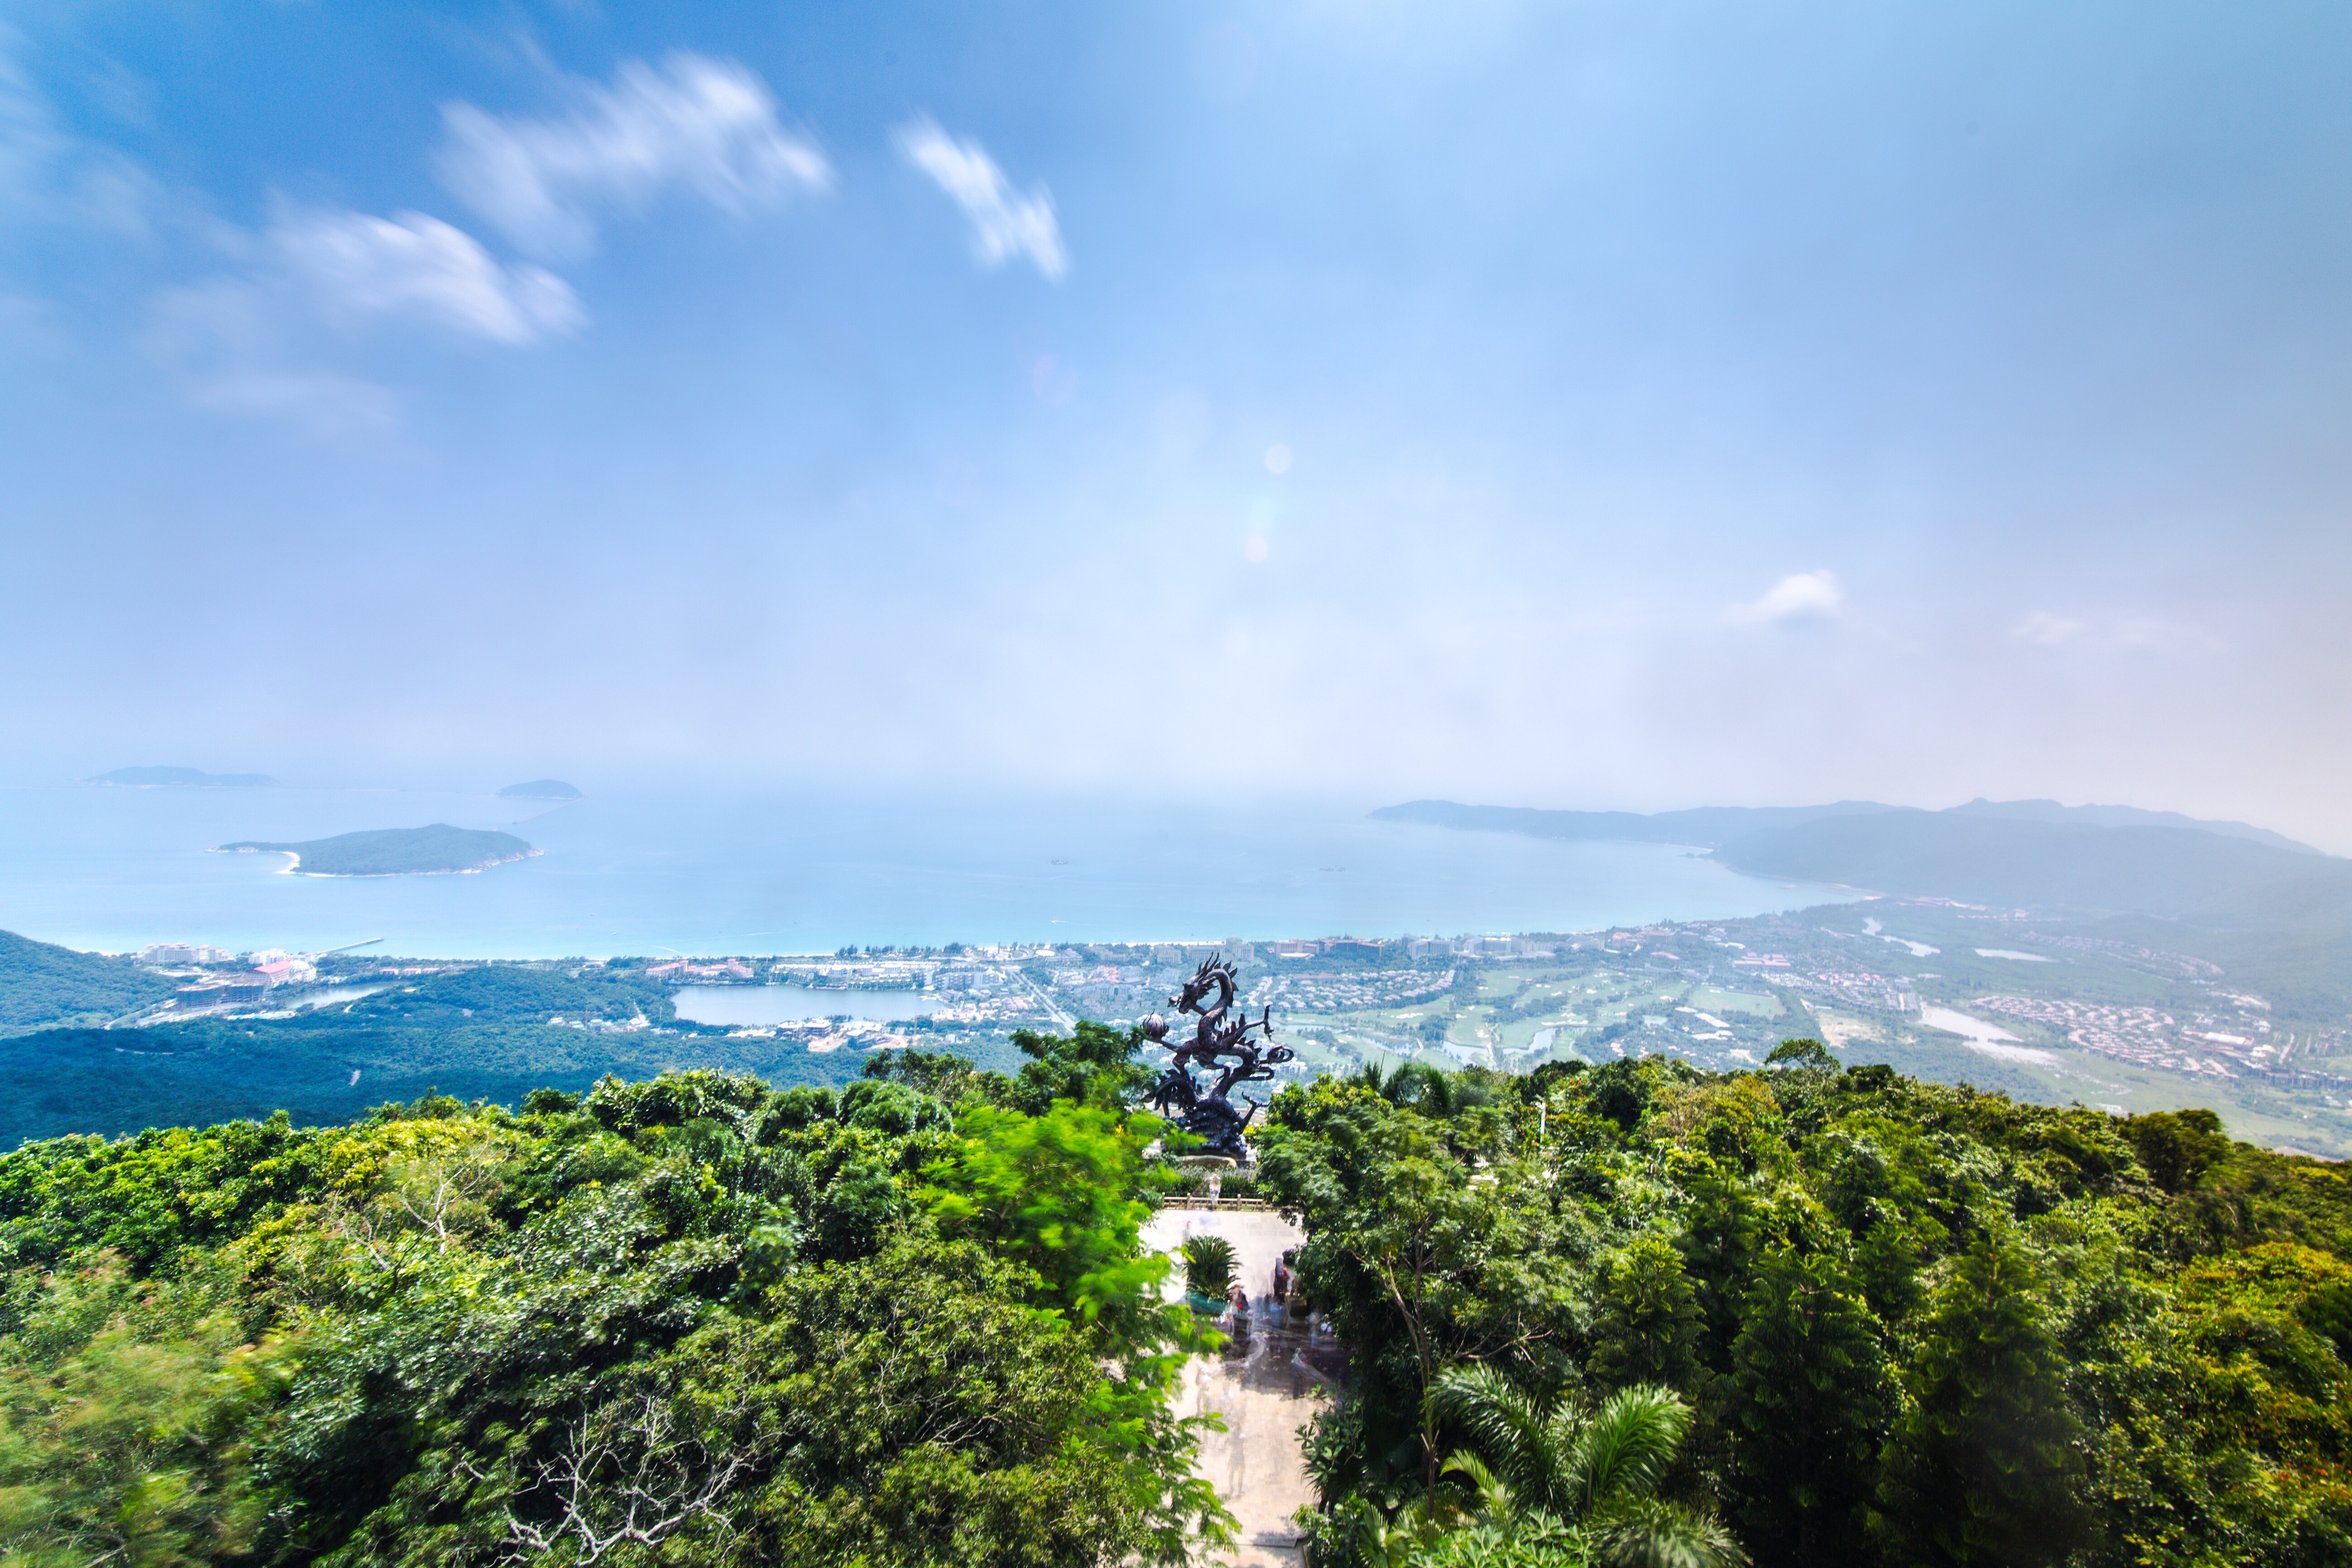 亚龙湾热带天堂森林公园 - 三亚景点 - 华侨城旅游网